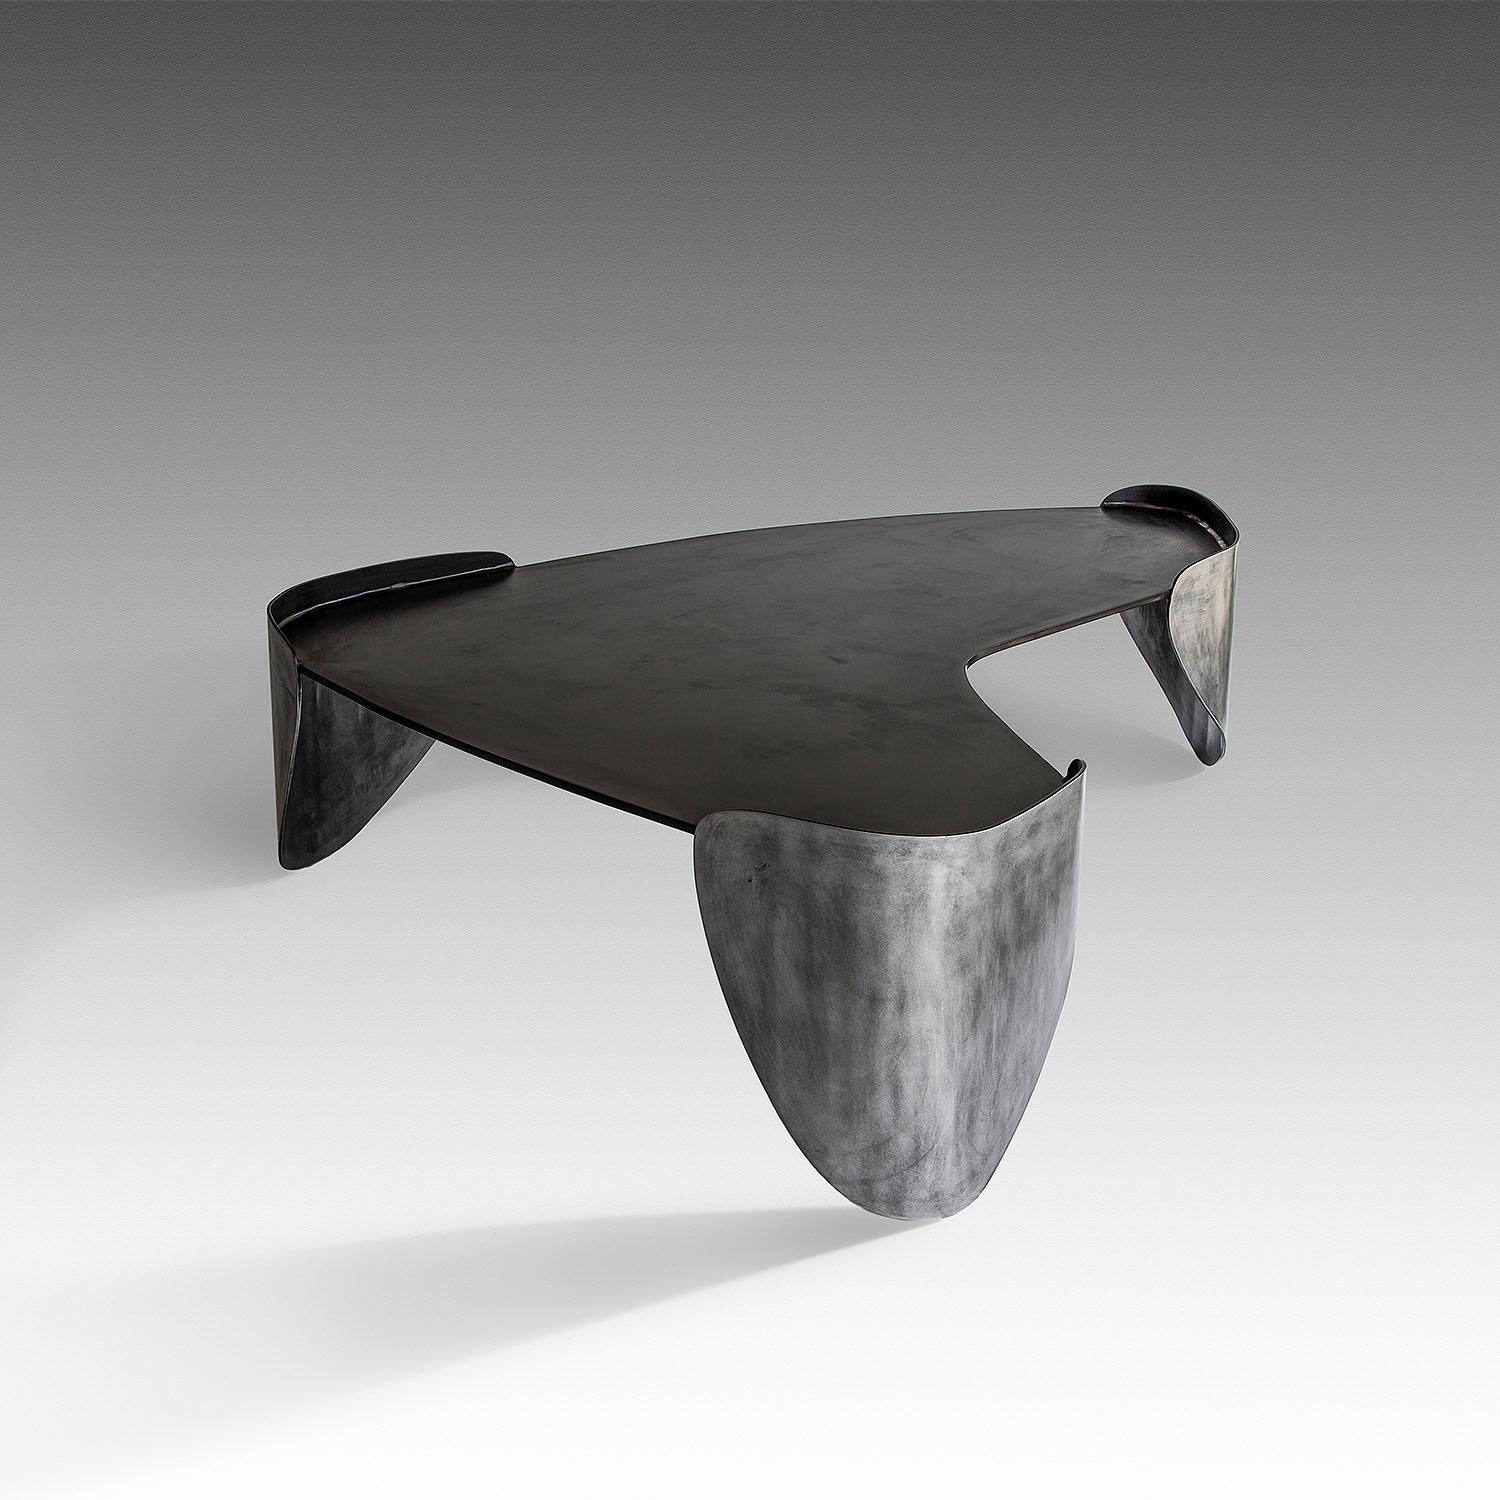 Table basse contemporaine en aluminium et acier, Laguna par Adam Court pour OKHA

Design : Adam Court

MATERIAL : Aluminium patiné / Acier doux noir bleu Options de cadre

Dimensions :
1380W X 1170D X 410H mm
54.3W X 46.1D X 16.1H in

Fabriqué à la